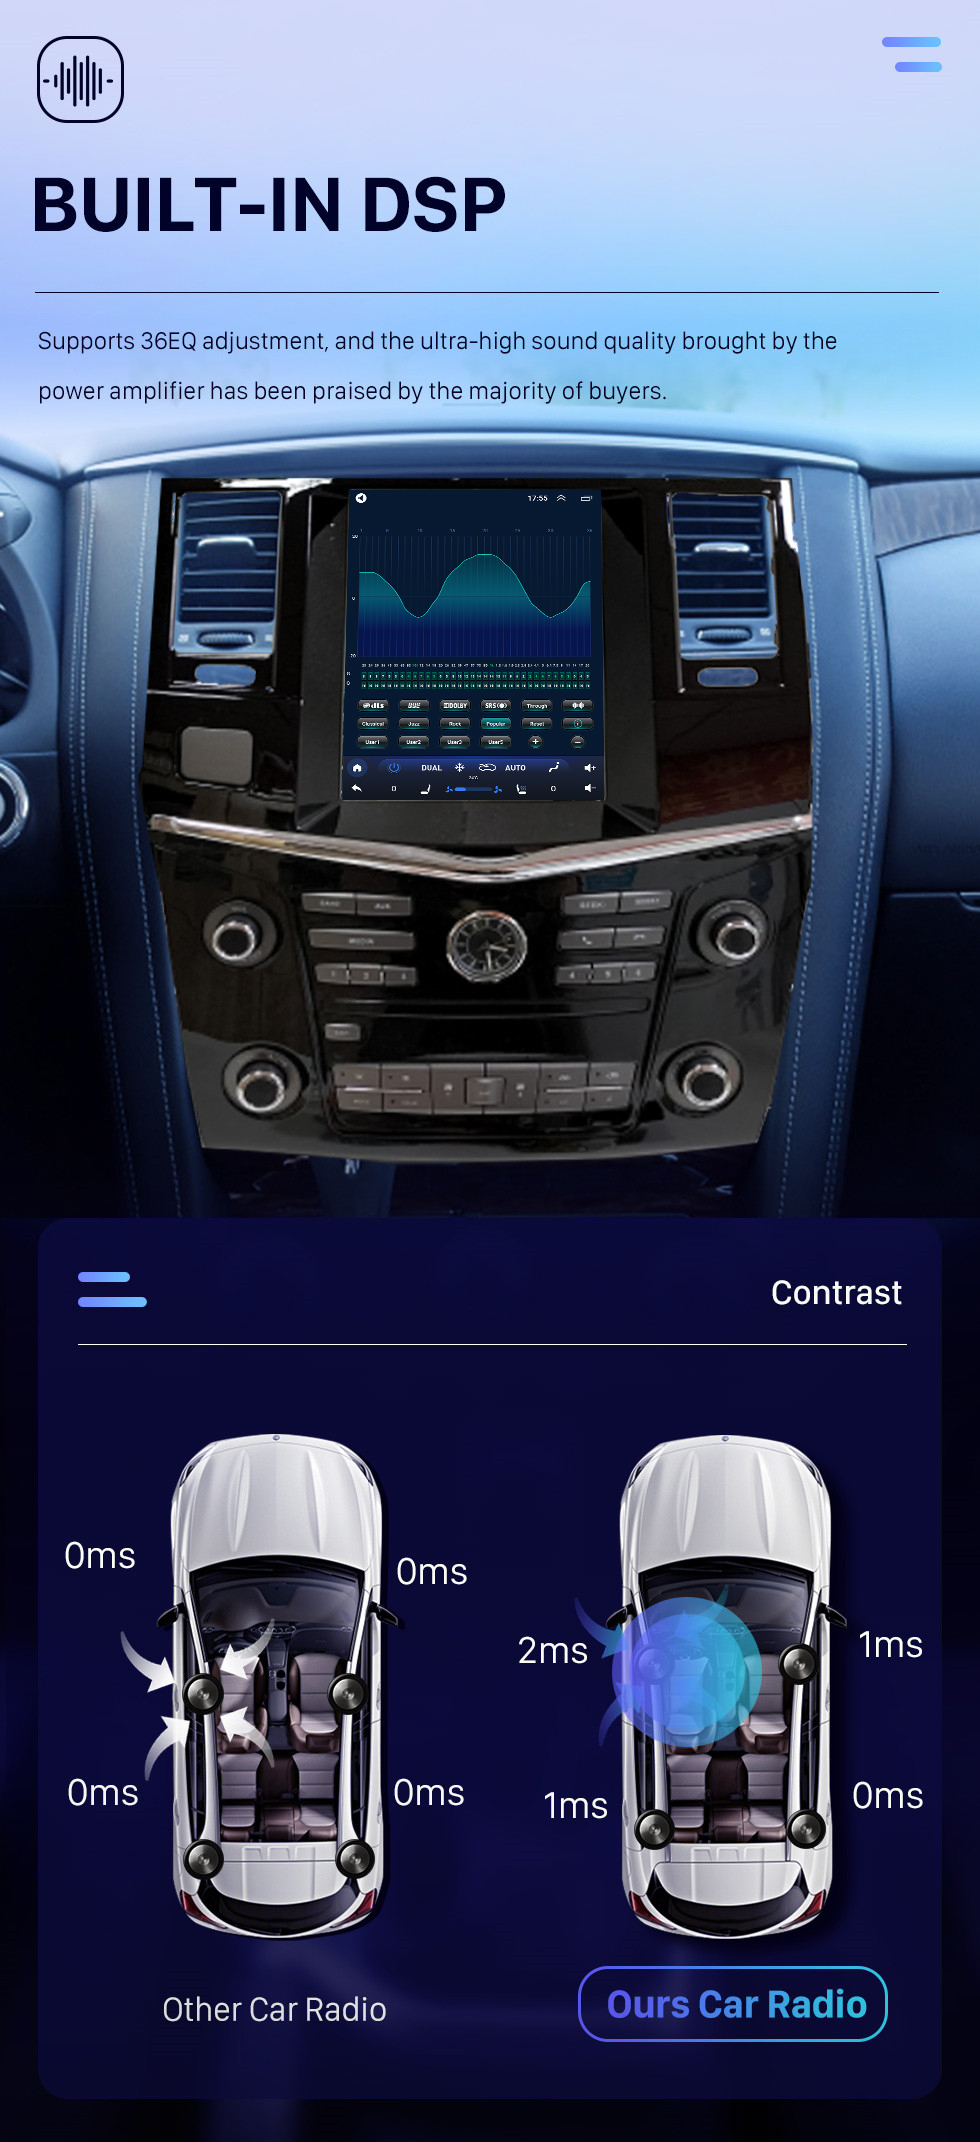 Seicane OEM Android 10.0 para 2017 Nissan patrulha rádio do carro com 9,7 polegadas HD touchscreen sistema de navegação GPS Carplay suporte AHD câmera retrovisor DAB + DSP OBD2 DVR